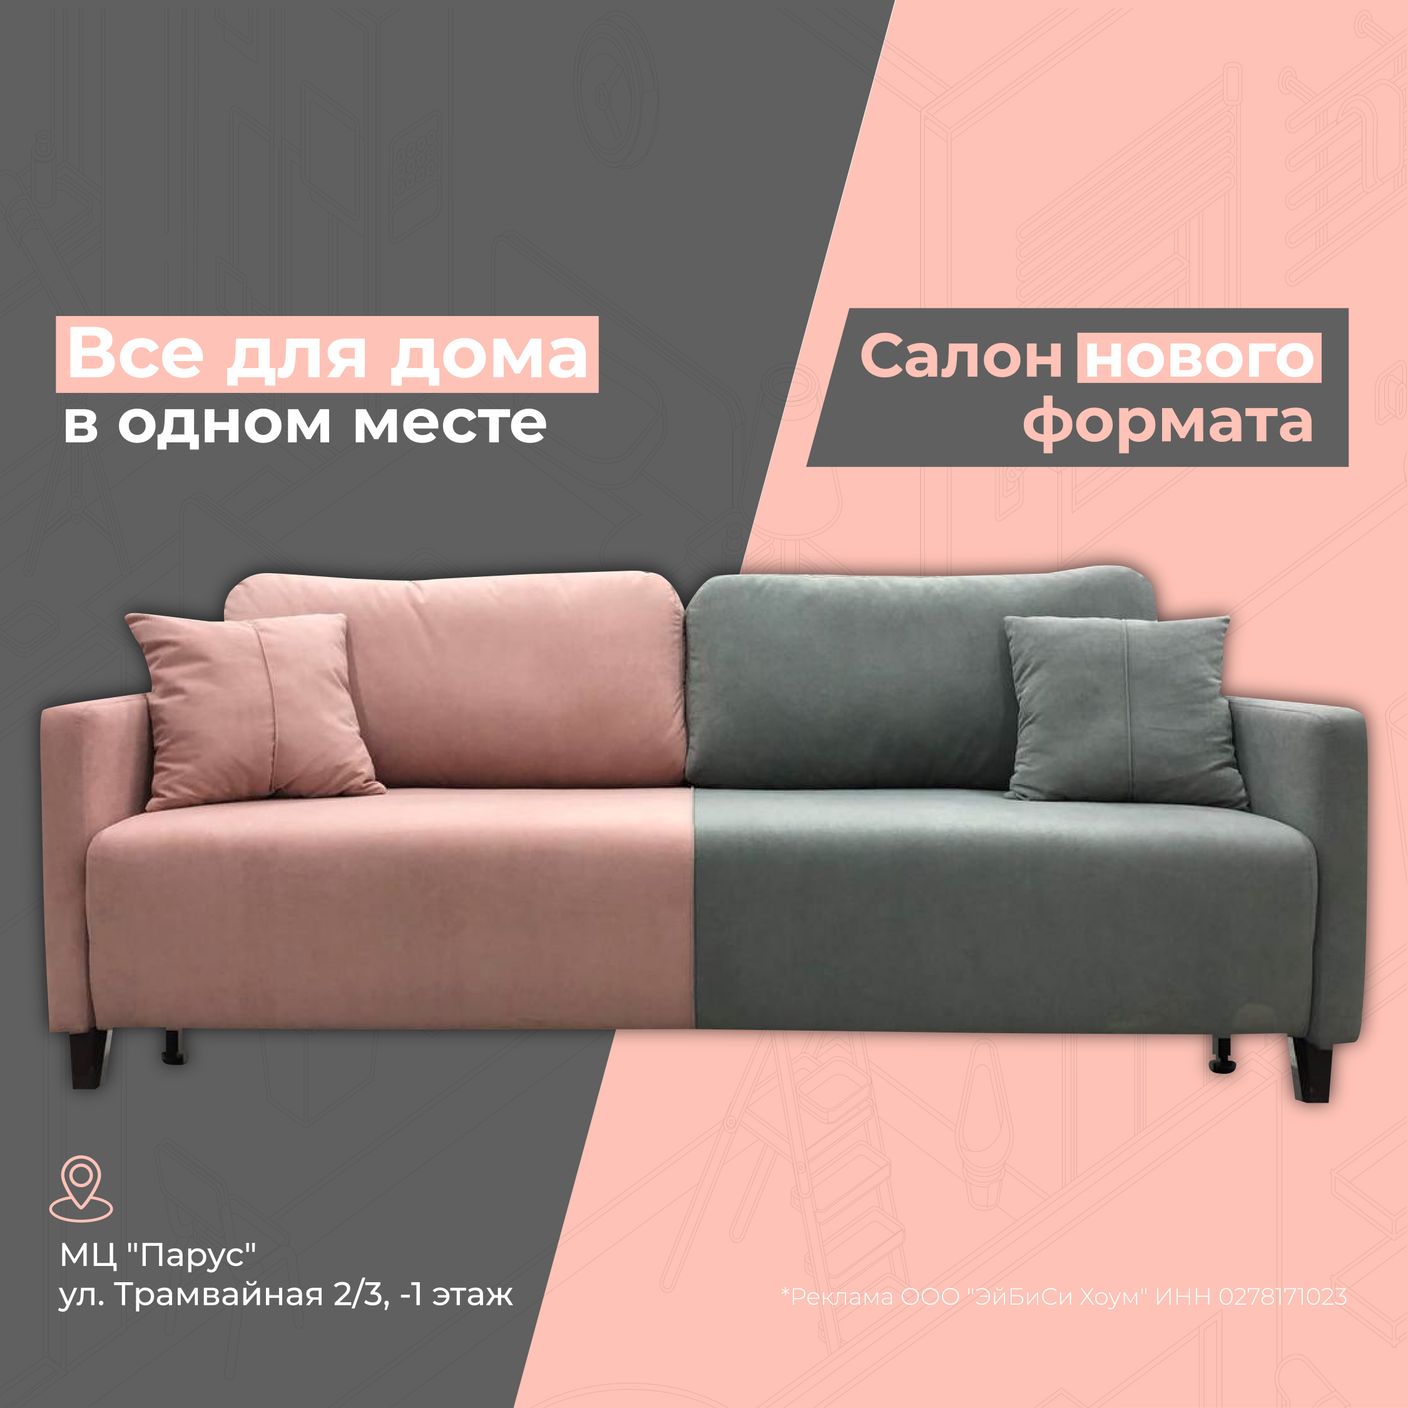 ufimskiy-dommebeli.ru – купить мебель в один клик с доставкой по Уфе!